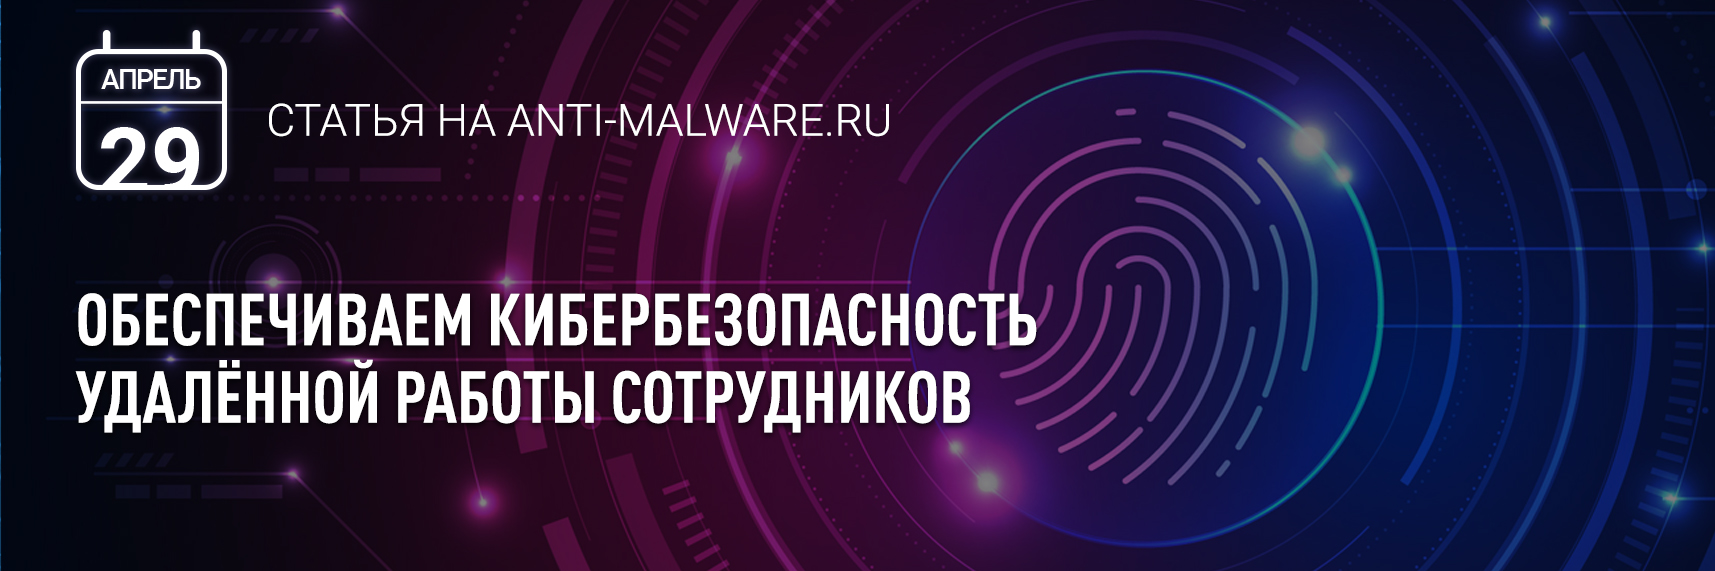 [Anti-Malware] Кибербезопасность удалённой работы сотрудников